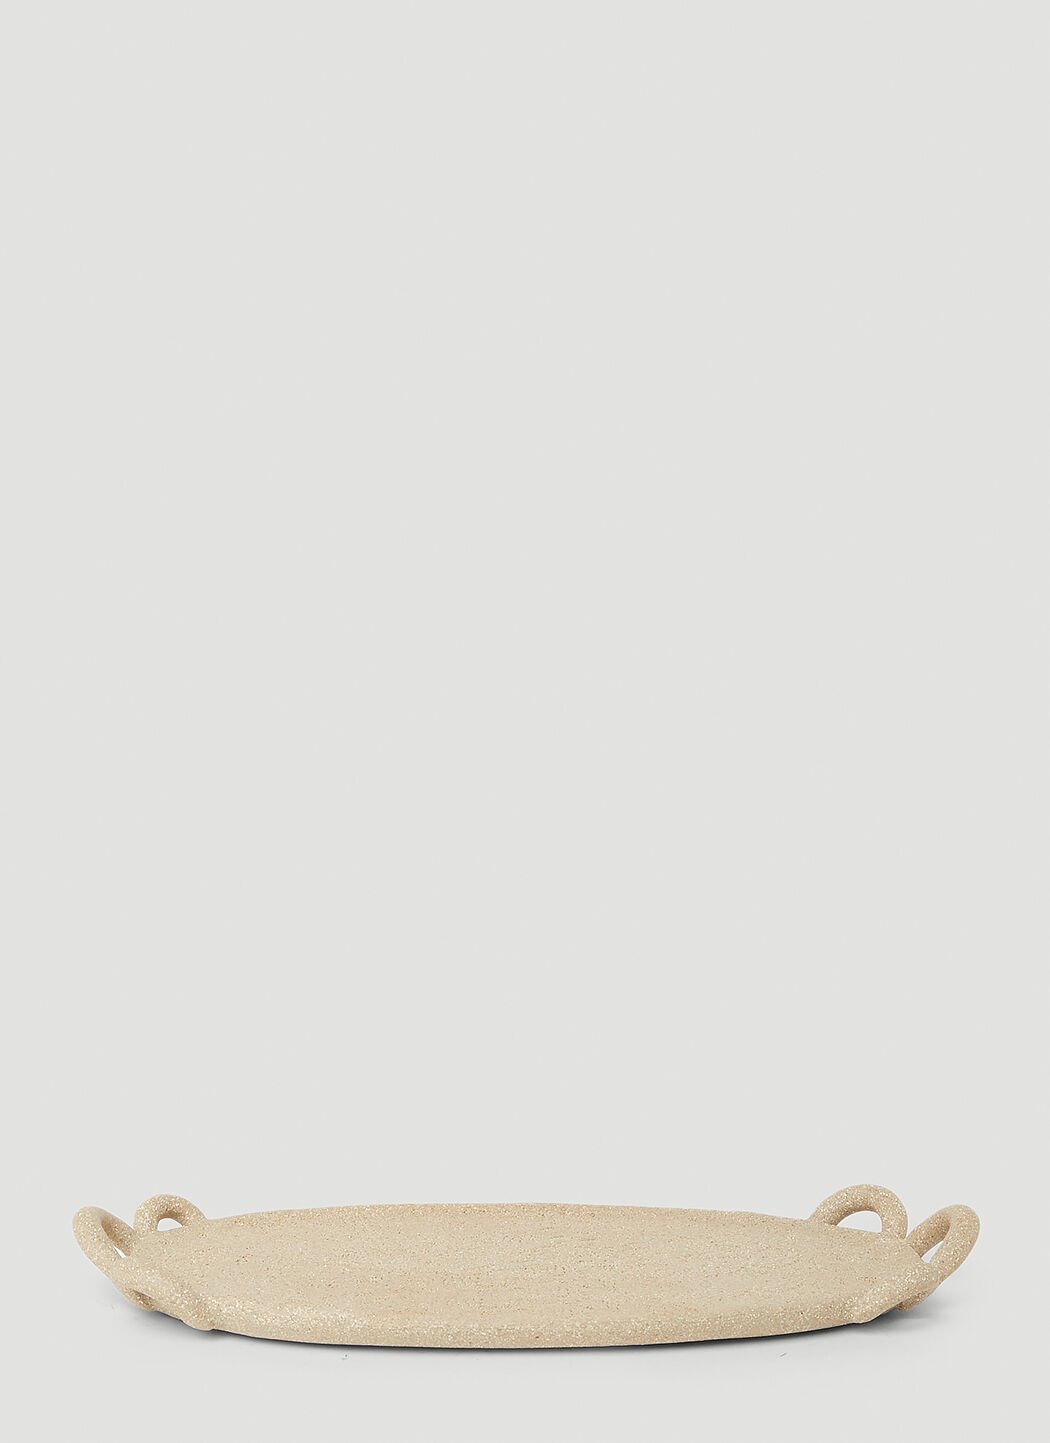 Marloe Marloe Emalla 盥洗托盘 棕色 rlo0353003